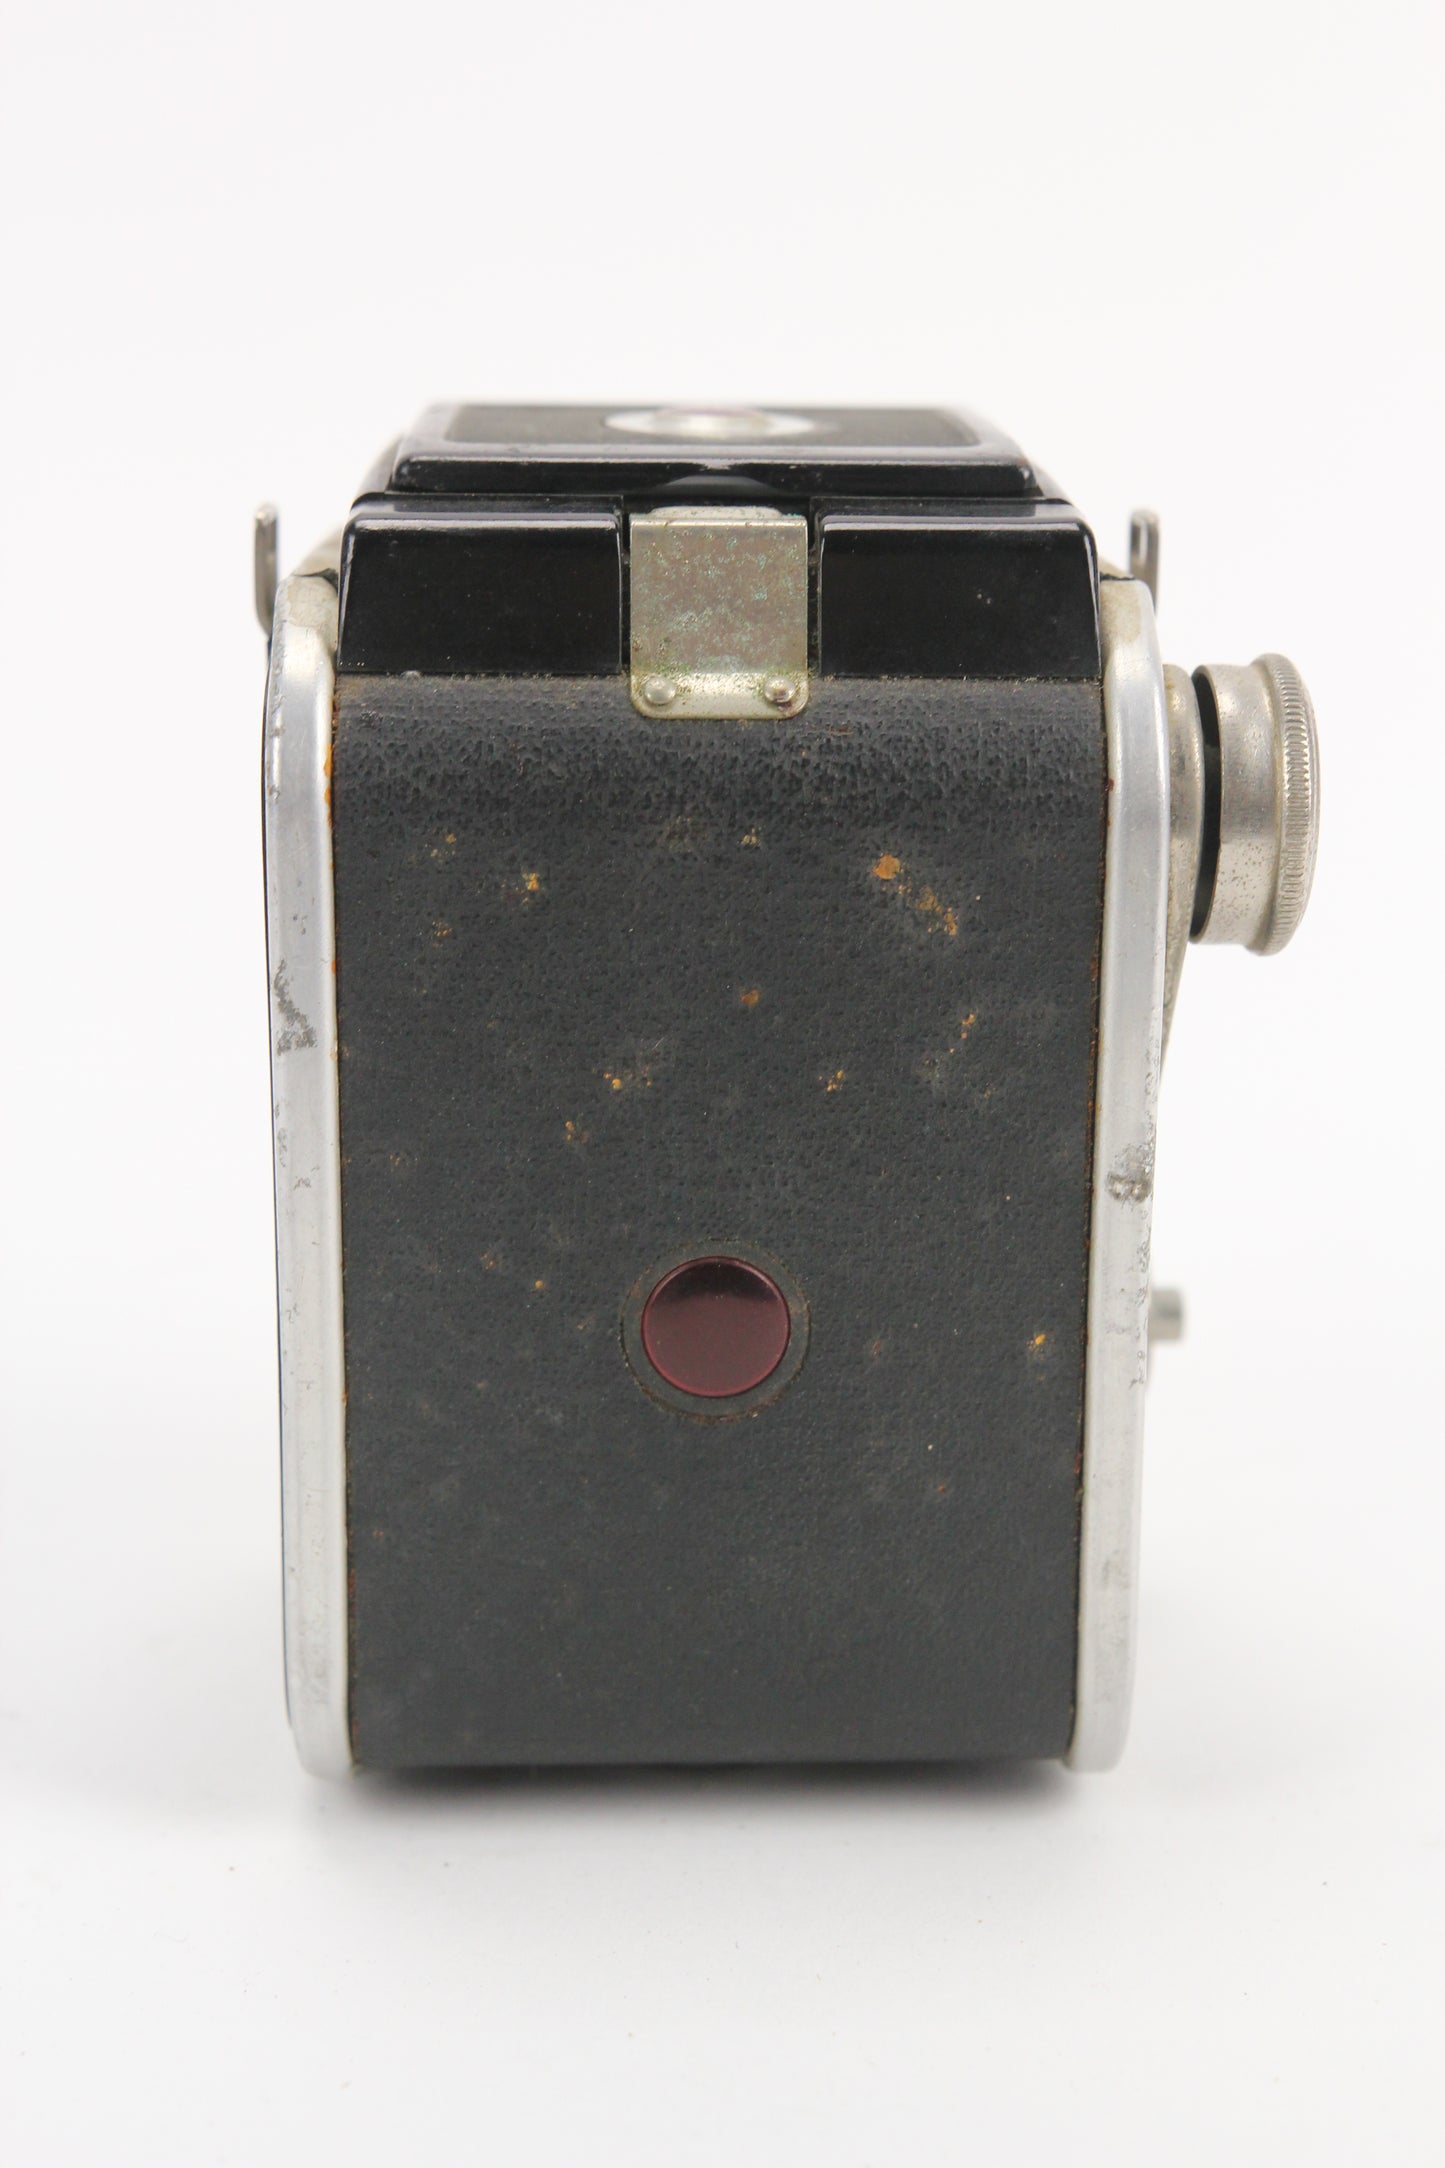 Kodak Dualflex III Kodet Lens TLR Camera, 1950s